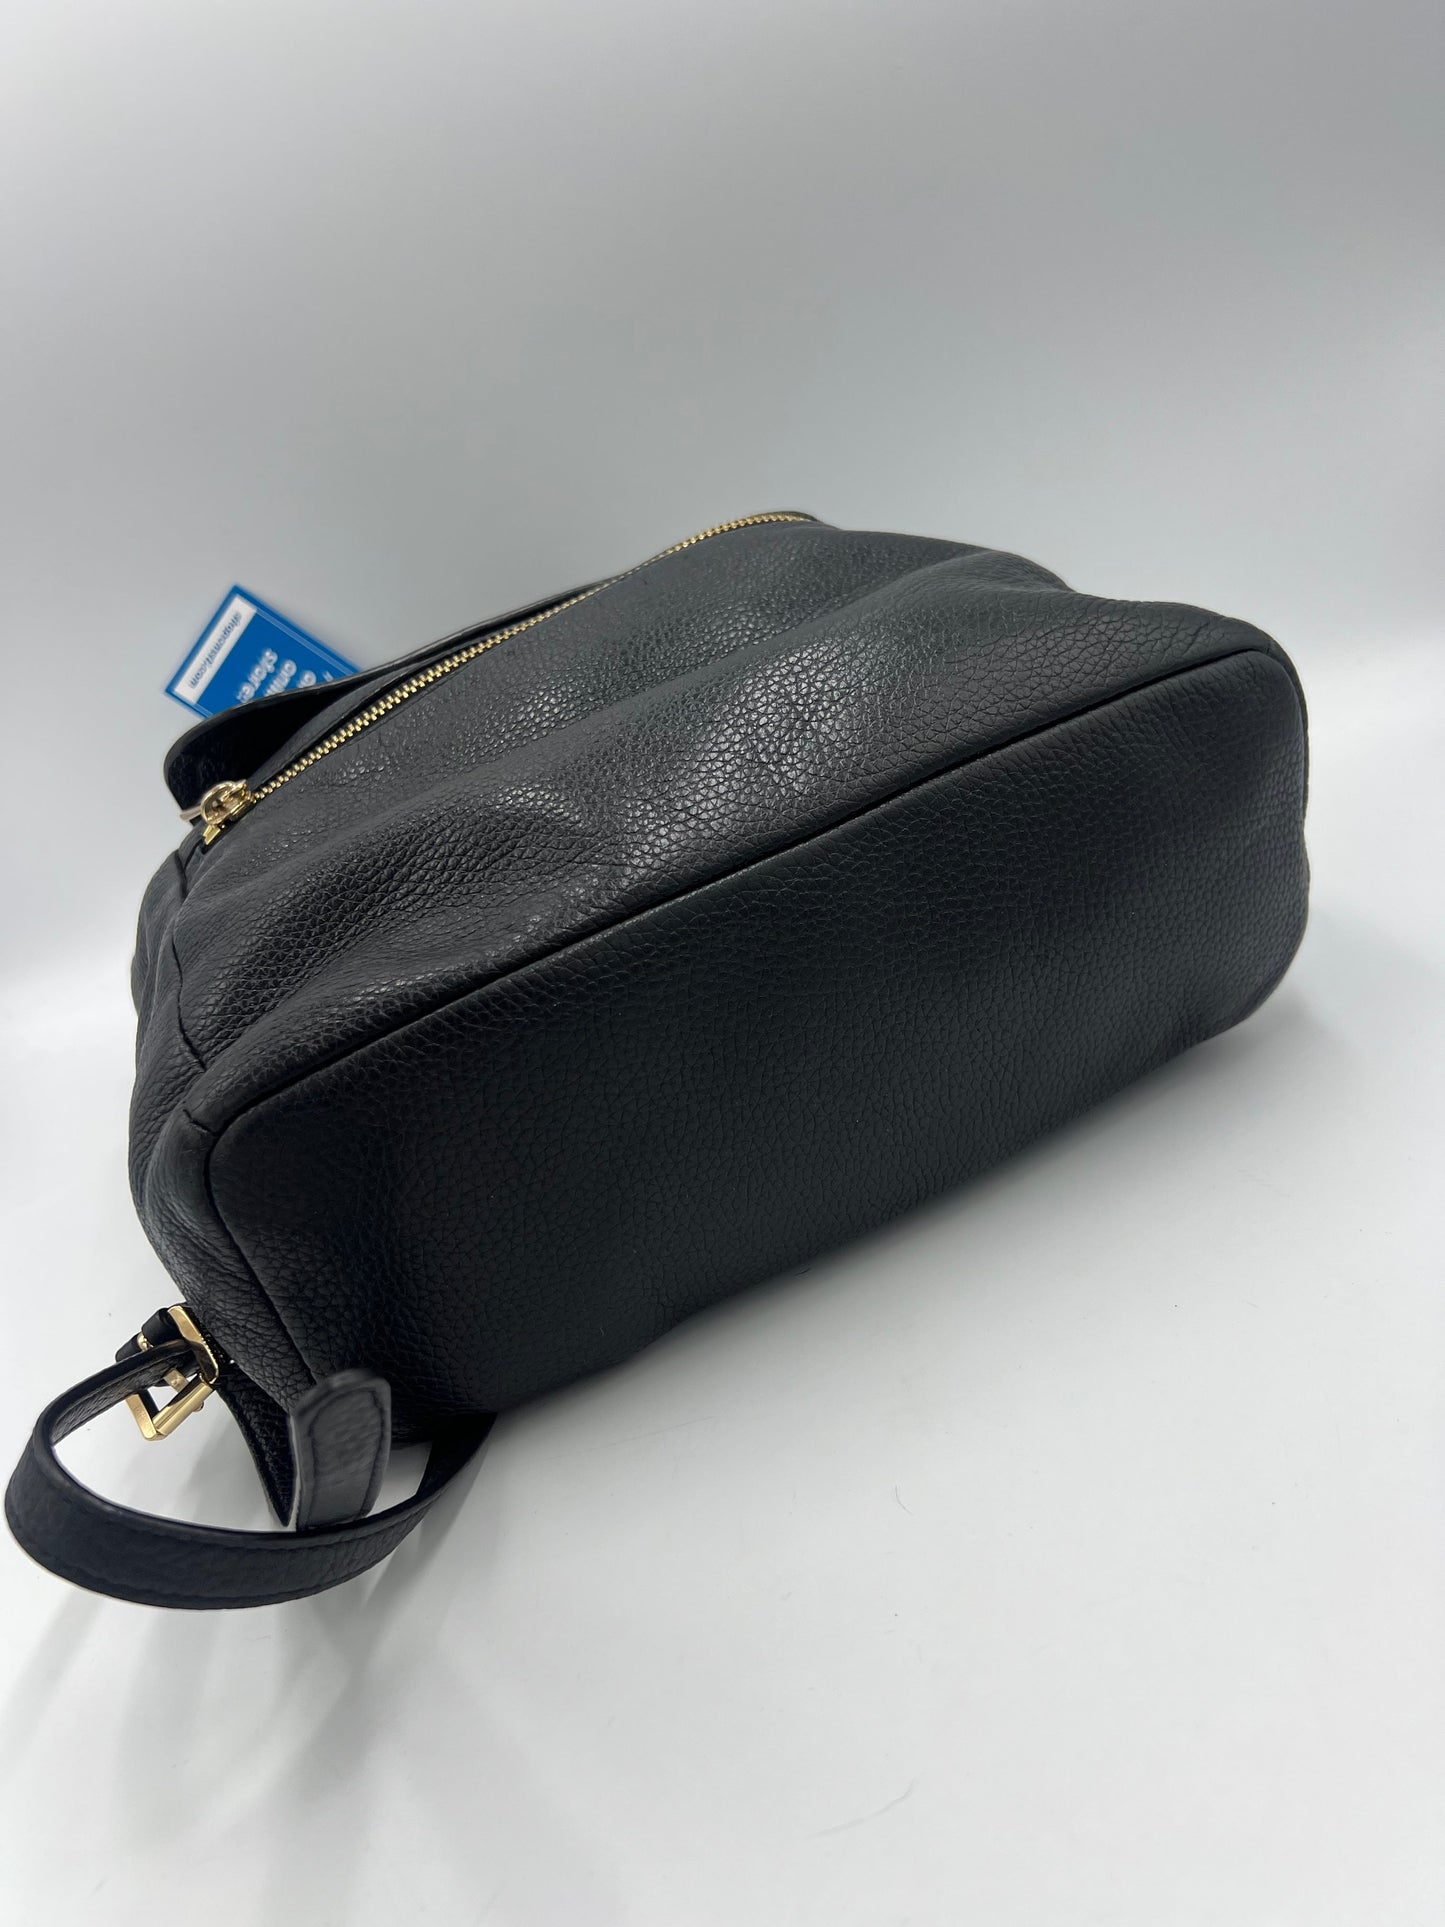 Leather Backpack Designer Michael Kors